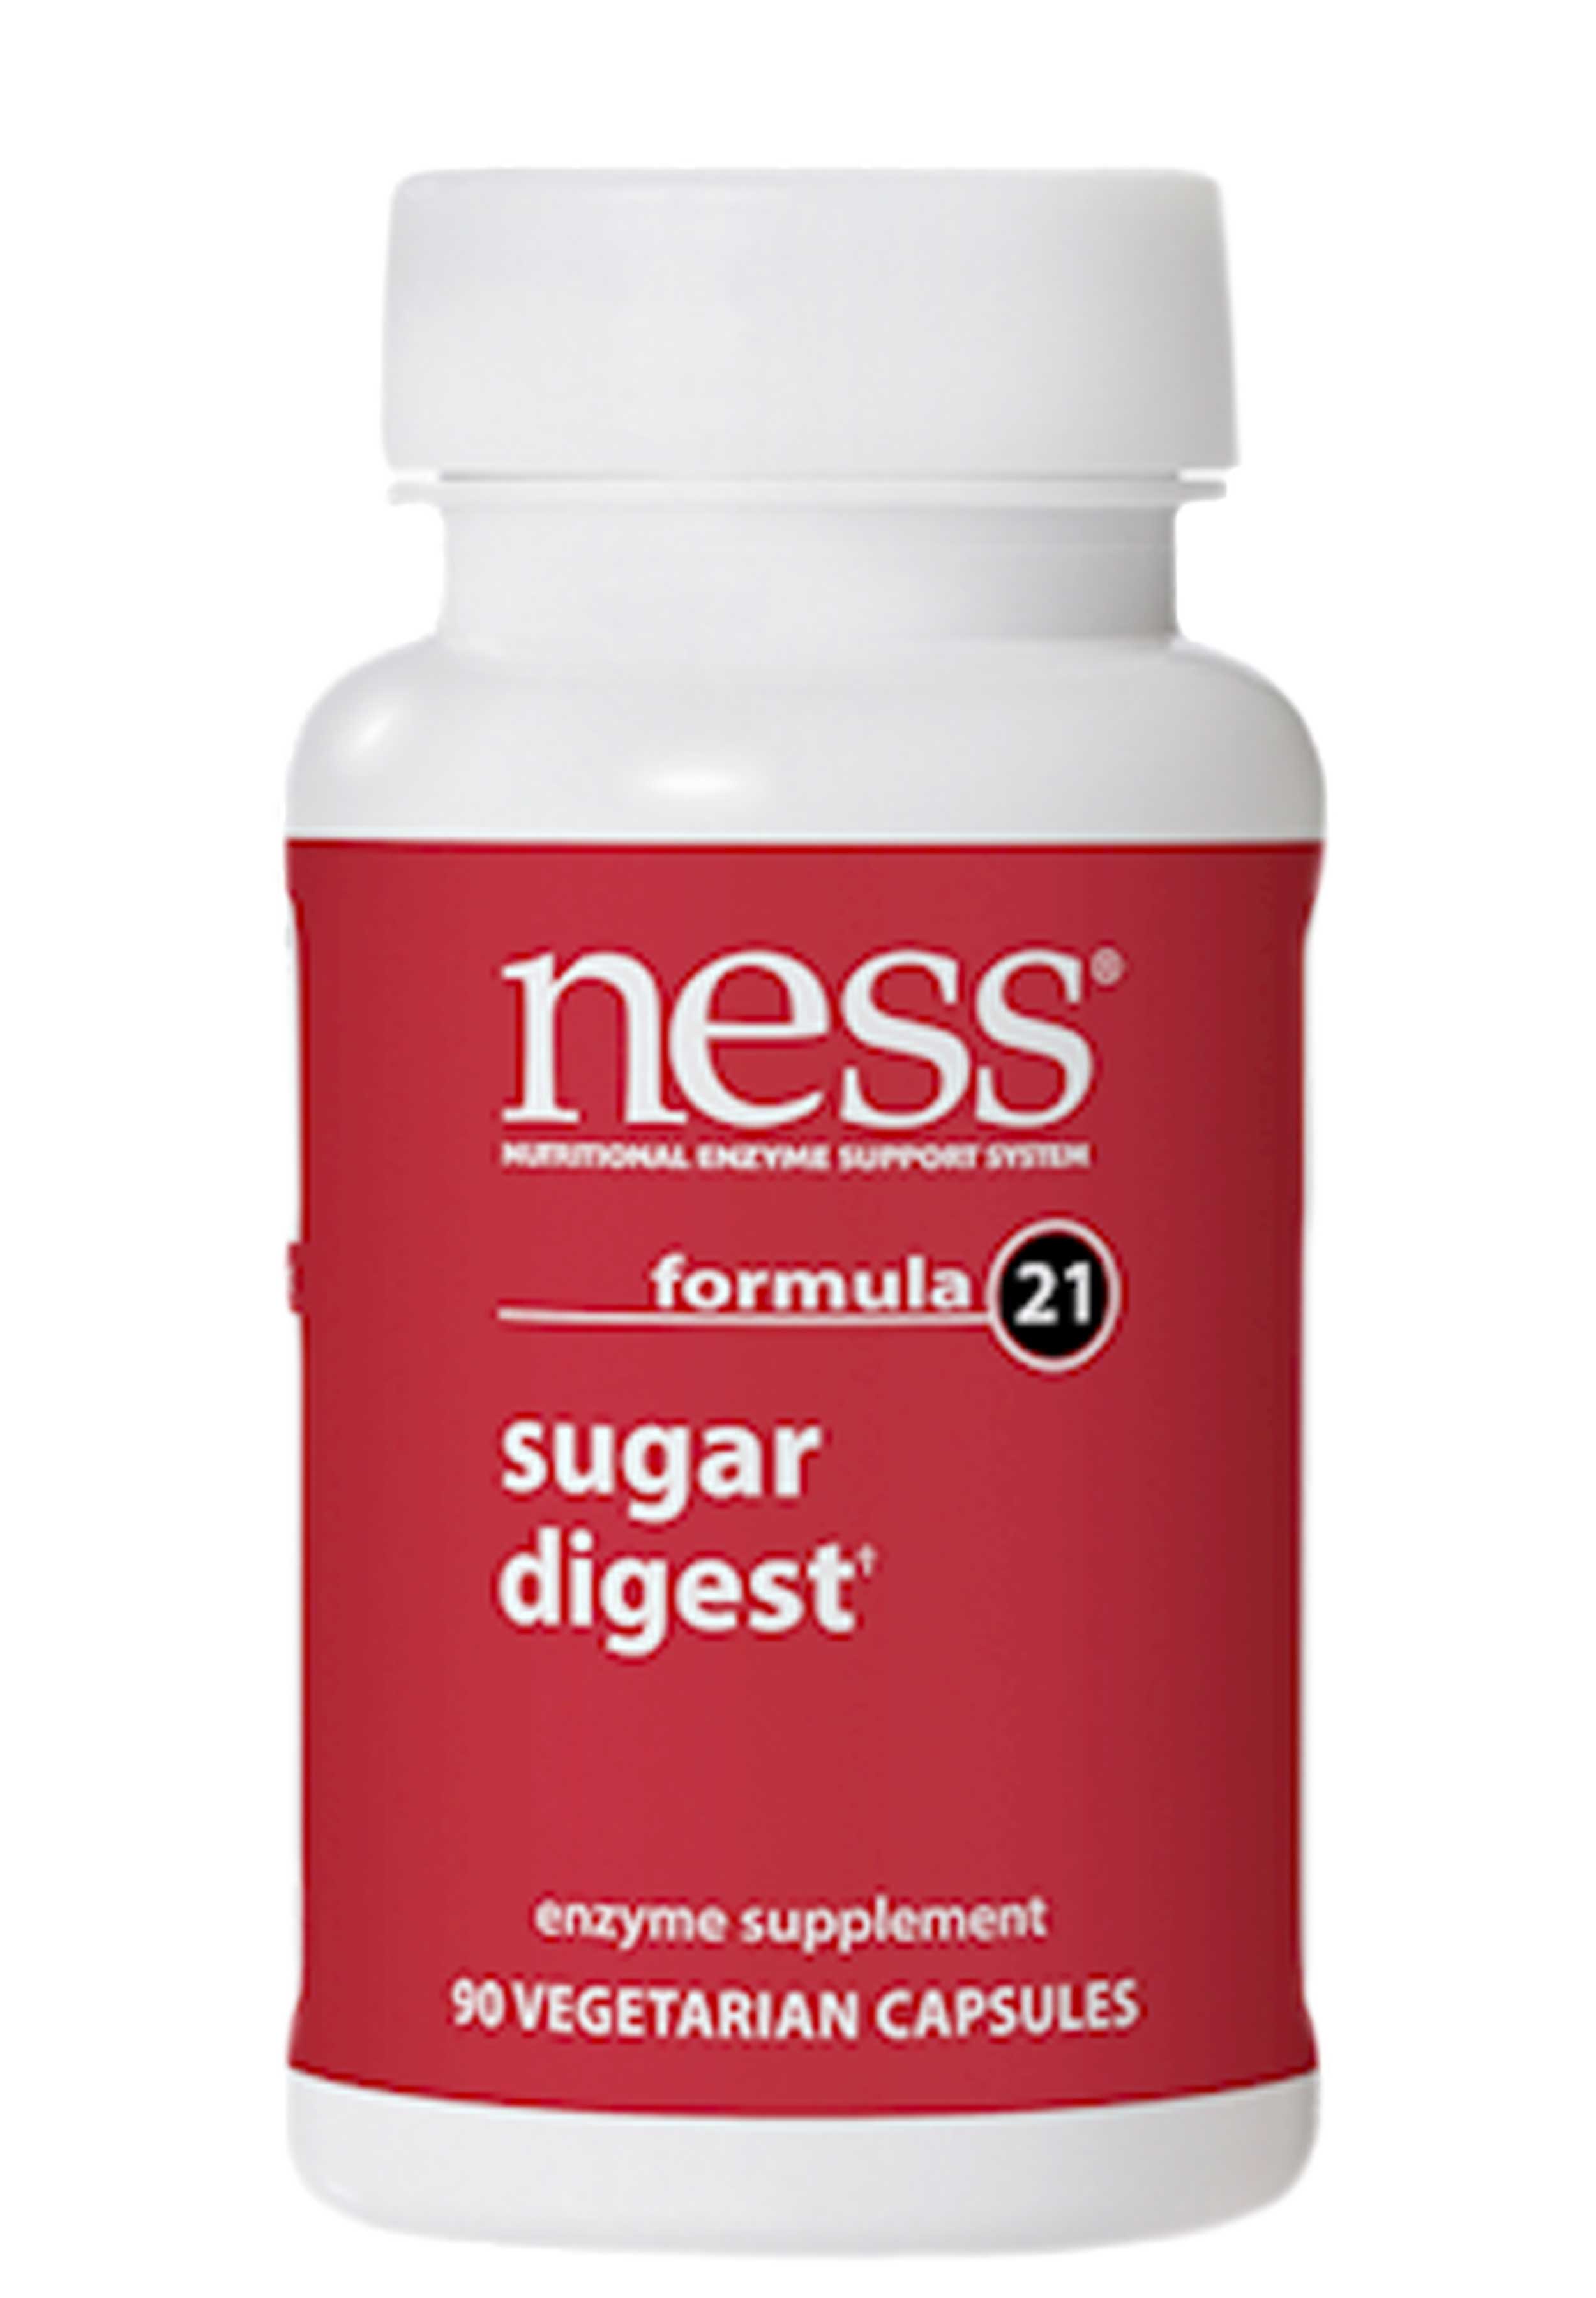 Ness Enzymes Sugar Digest formula 21